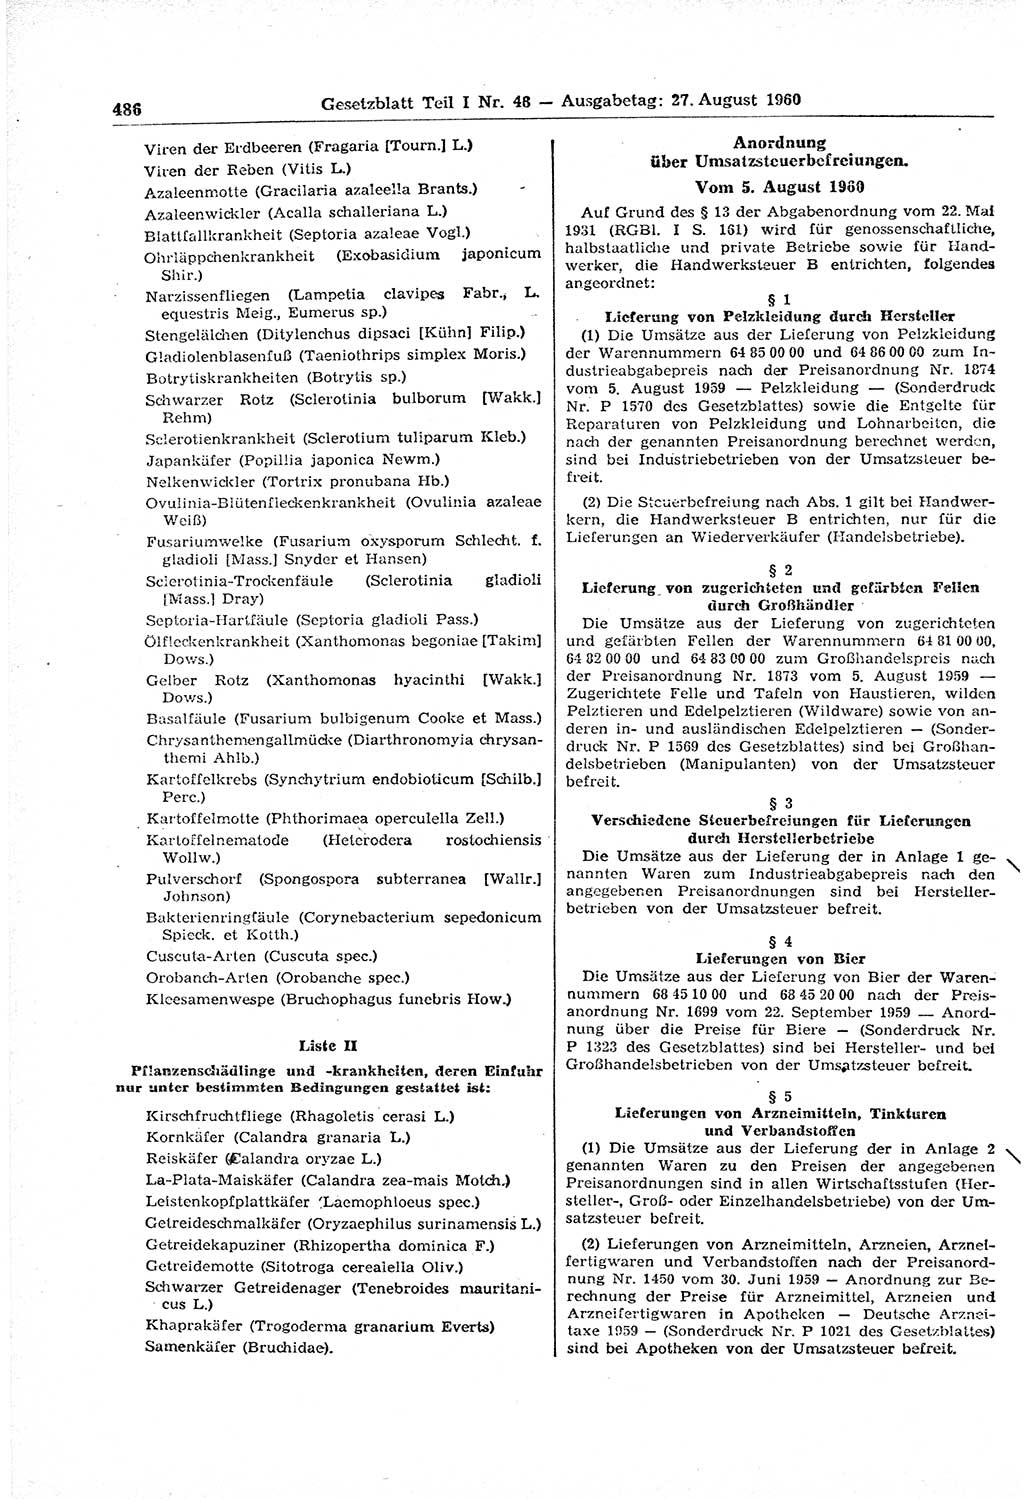 Gesetzblatt (GBl.) der Deutschen Demokratischen Republik (DDR) Teil Ⅰ 1960, Seite 486 (GBl. DDR Ⅰ 1960, S. 486)